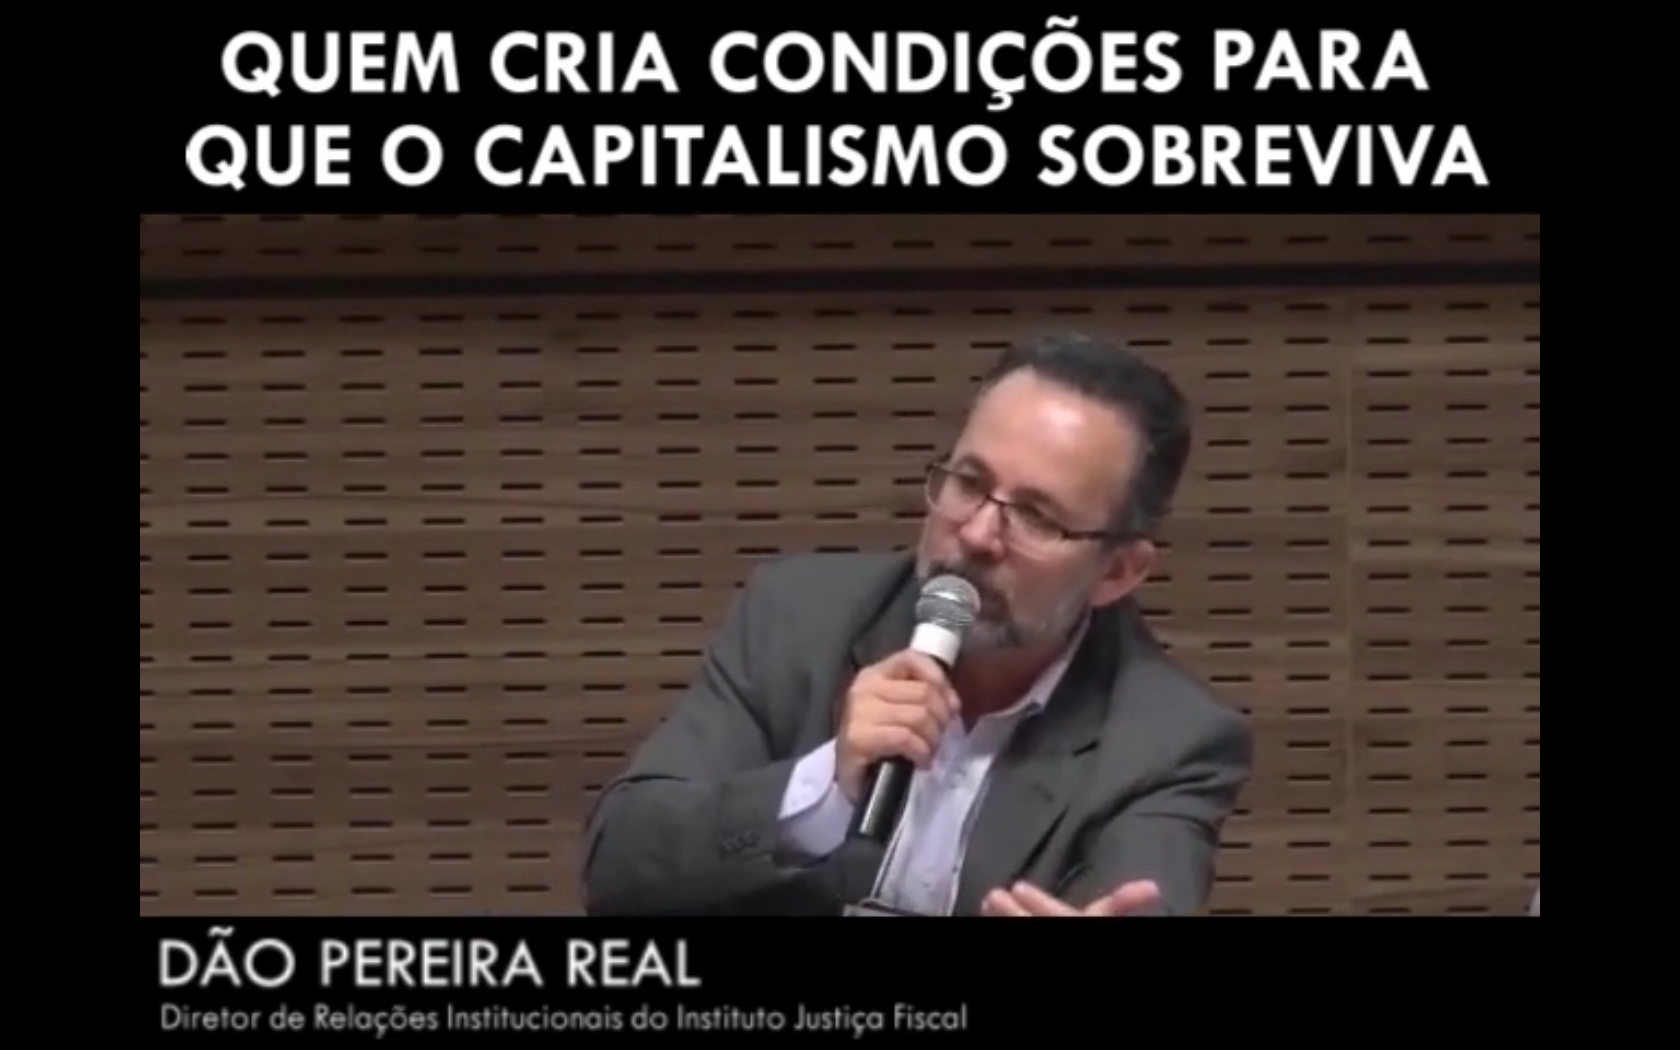 Quem cria condições para que o capitalismo sobreviva - Dão Pereira Real